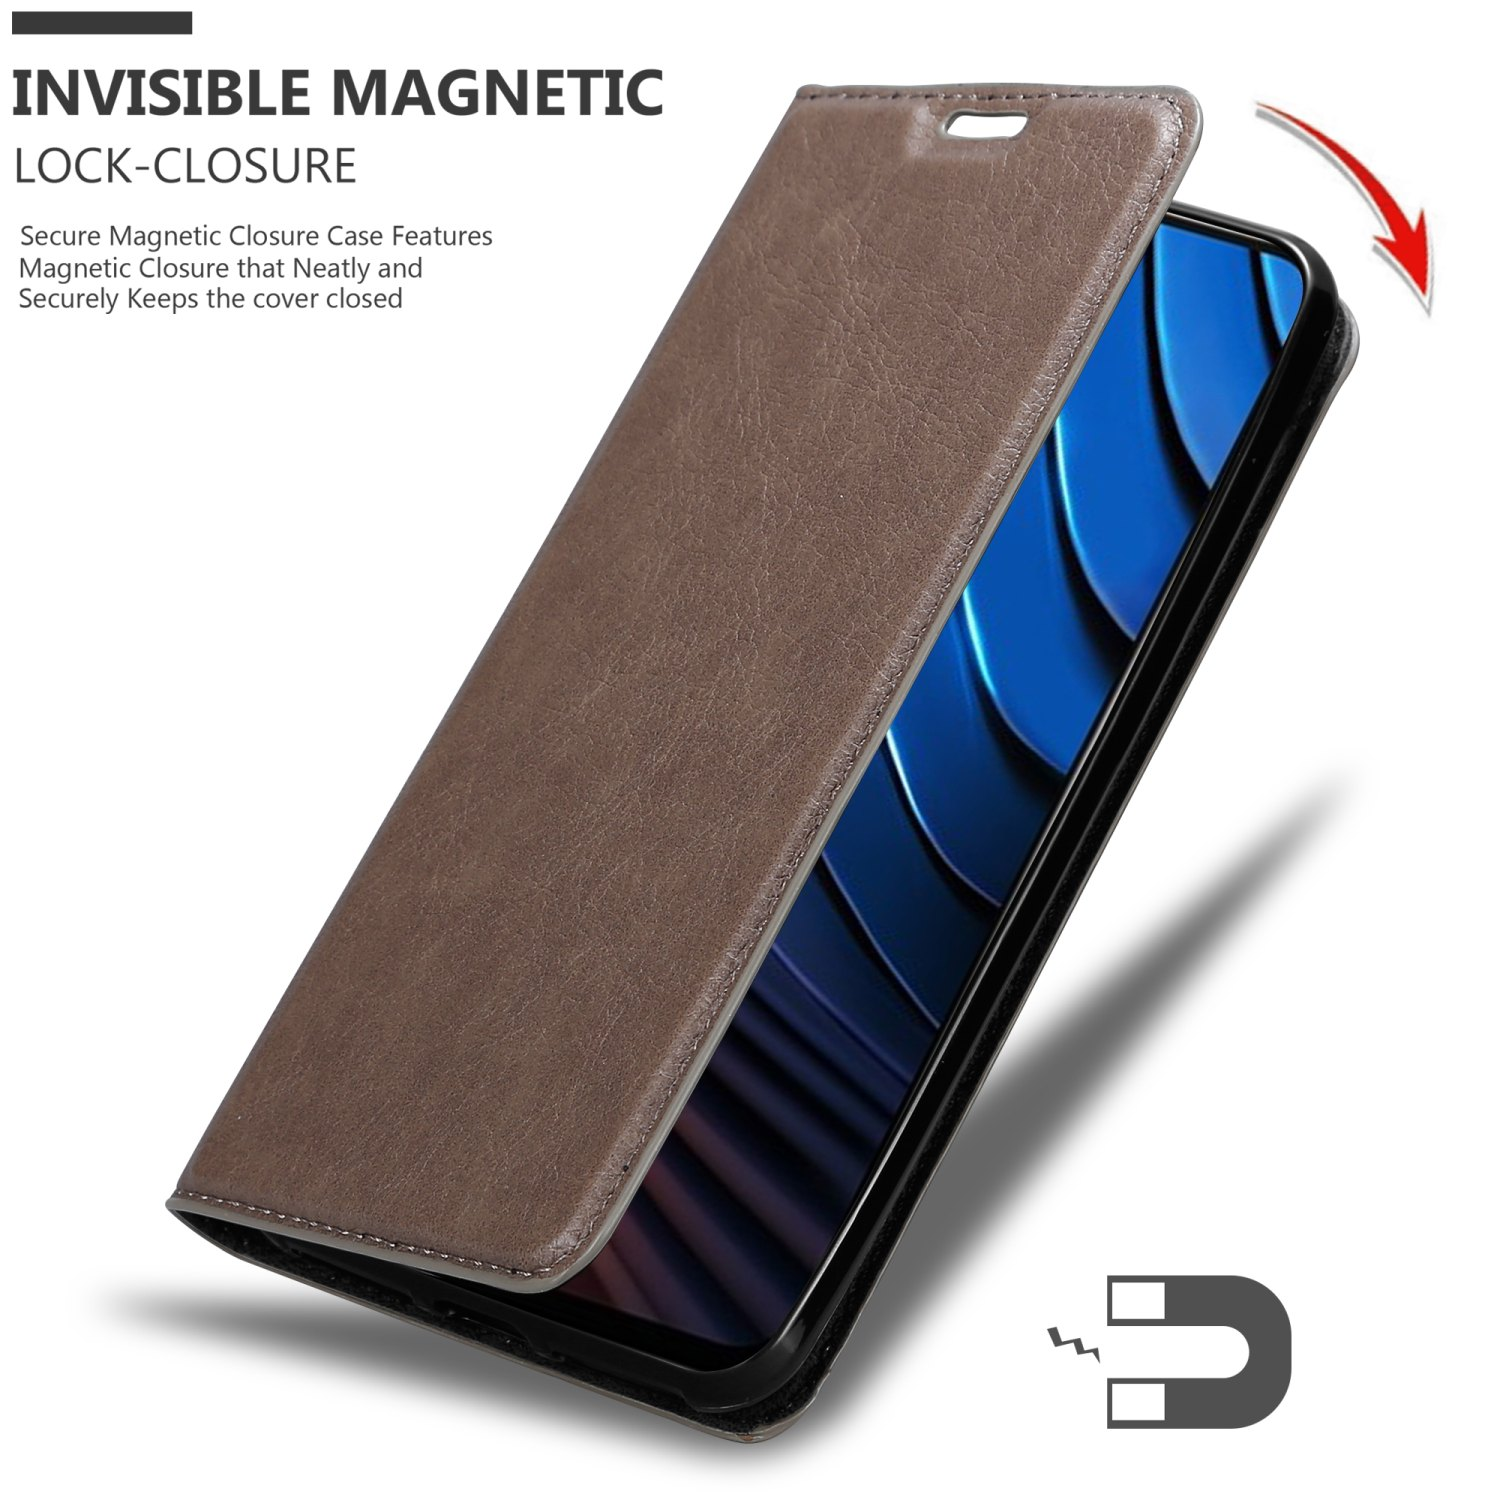 POCO Invisible Hülle Magnet, Xiaomi, BRAUN Book Bookcover, X3 KAFFEE CADORABO GT,